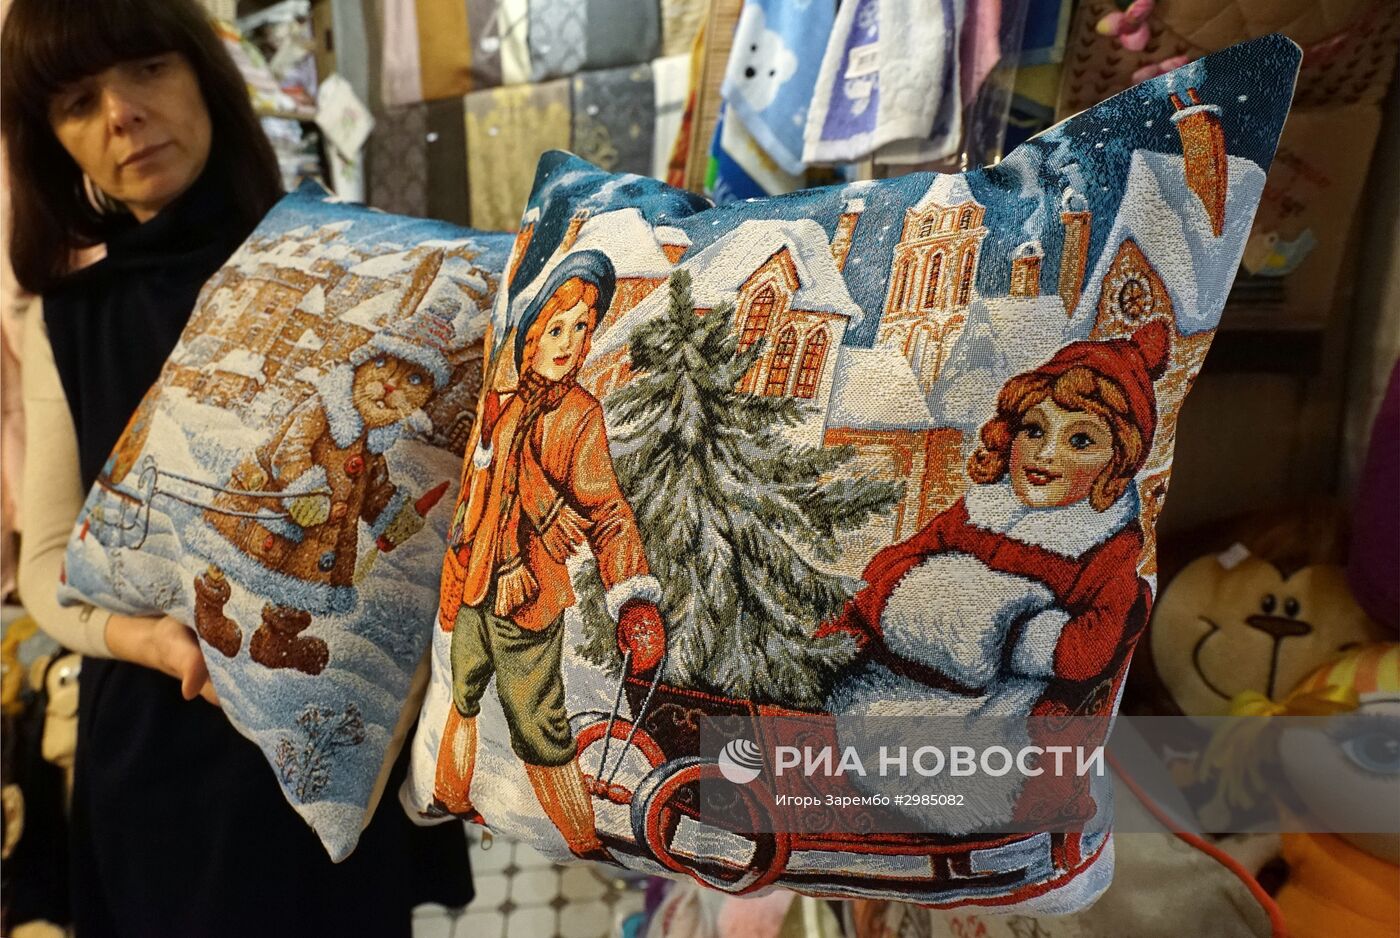 Продажа новогодних подарков и украшений в Калининграде